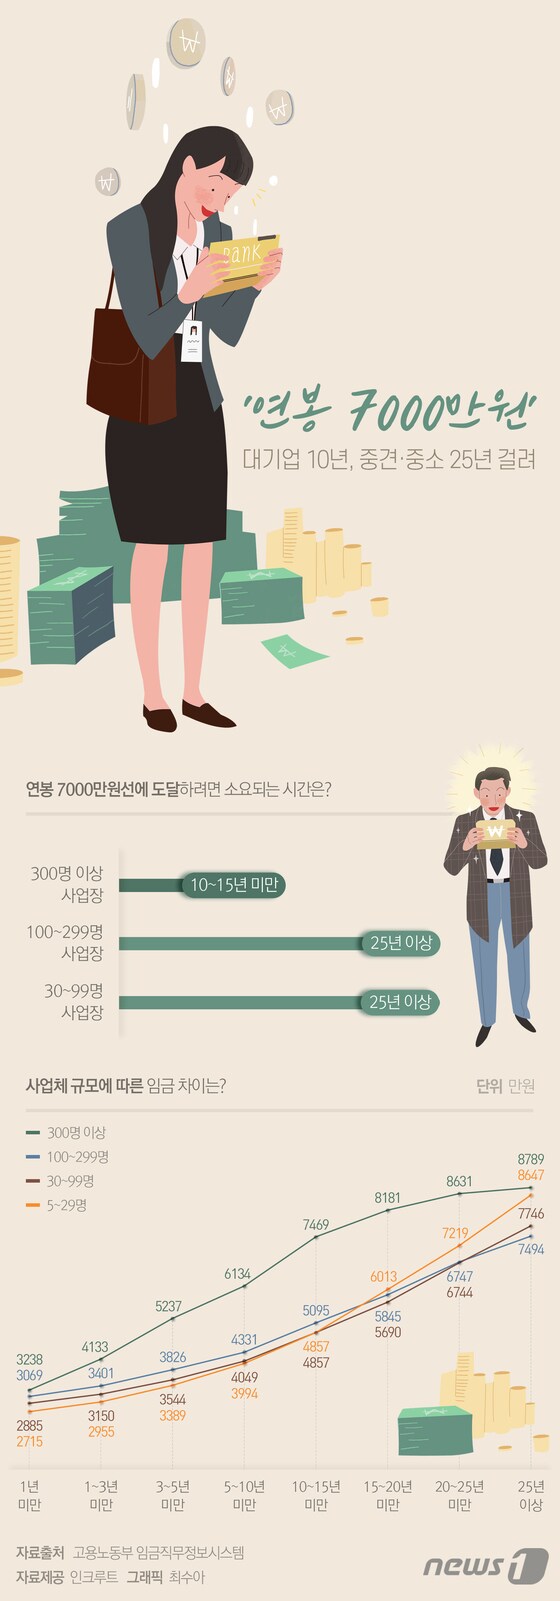 [그래픽뉴스] '연봉 7000만원' 대기업은 10년, 중견·중소는 25년 걸려